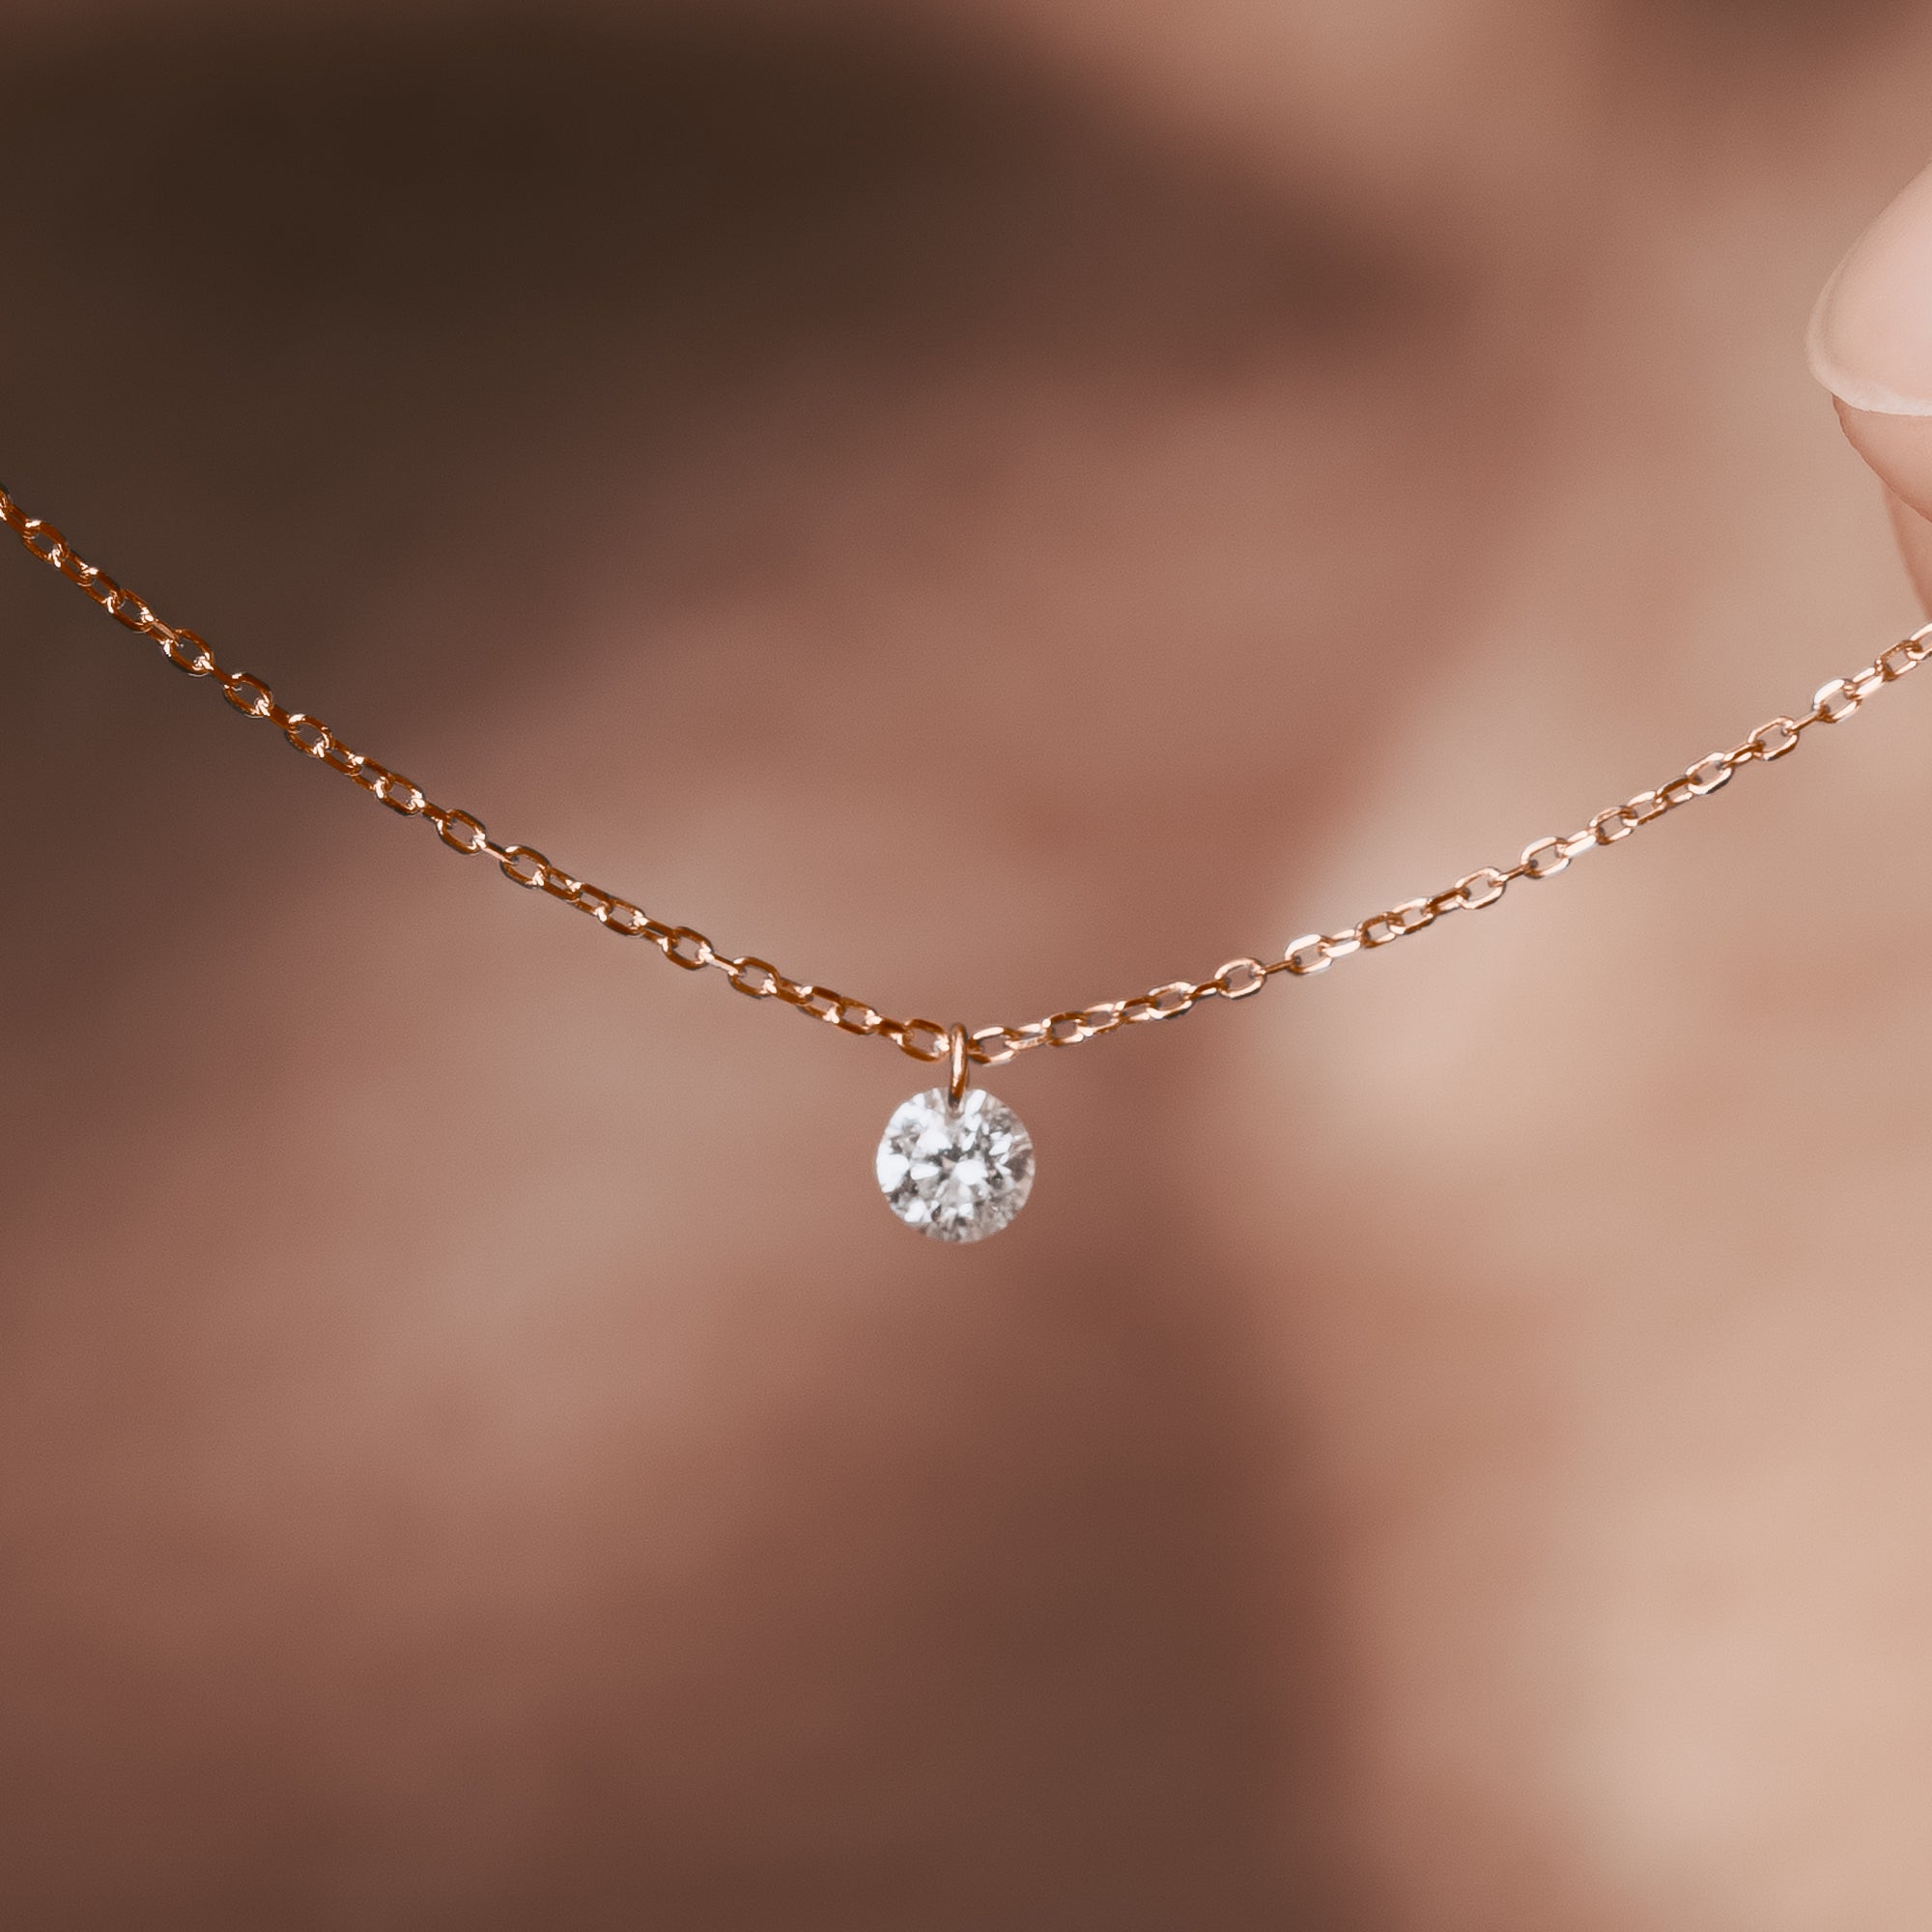 Jane Seymour SS 10K RG Open Hearts RHYTHM Diamond Necklace $349 ZALES KAY |  eBay